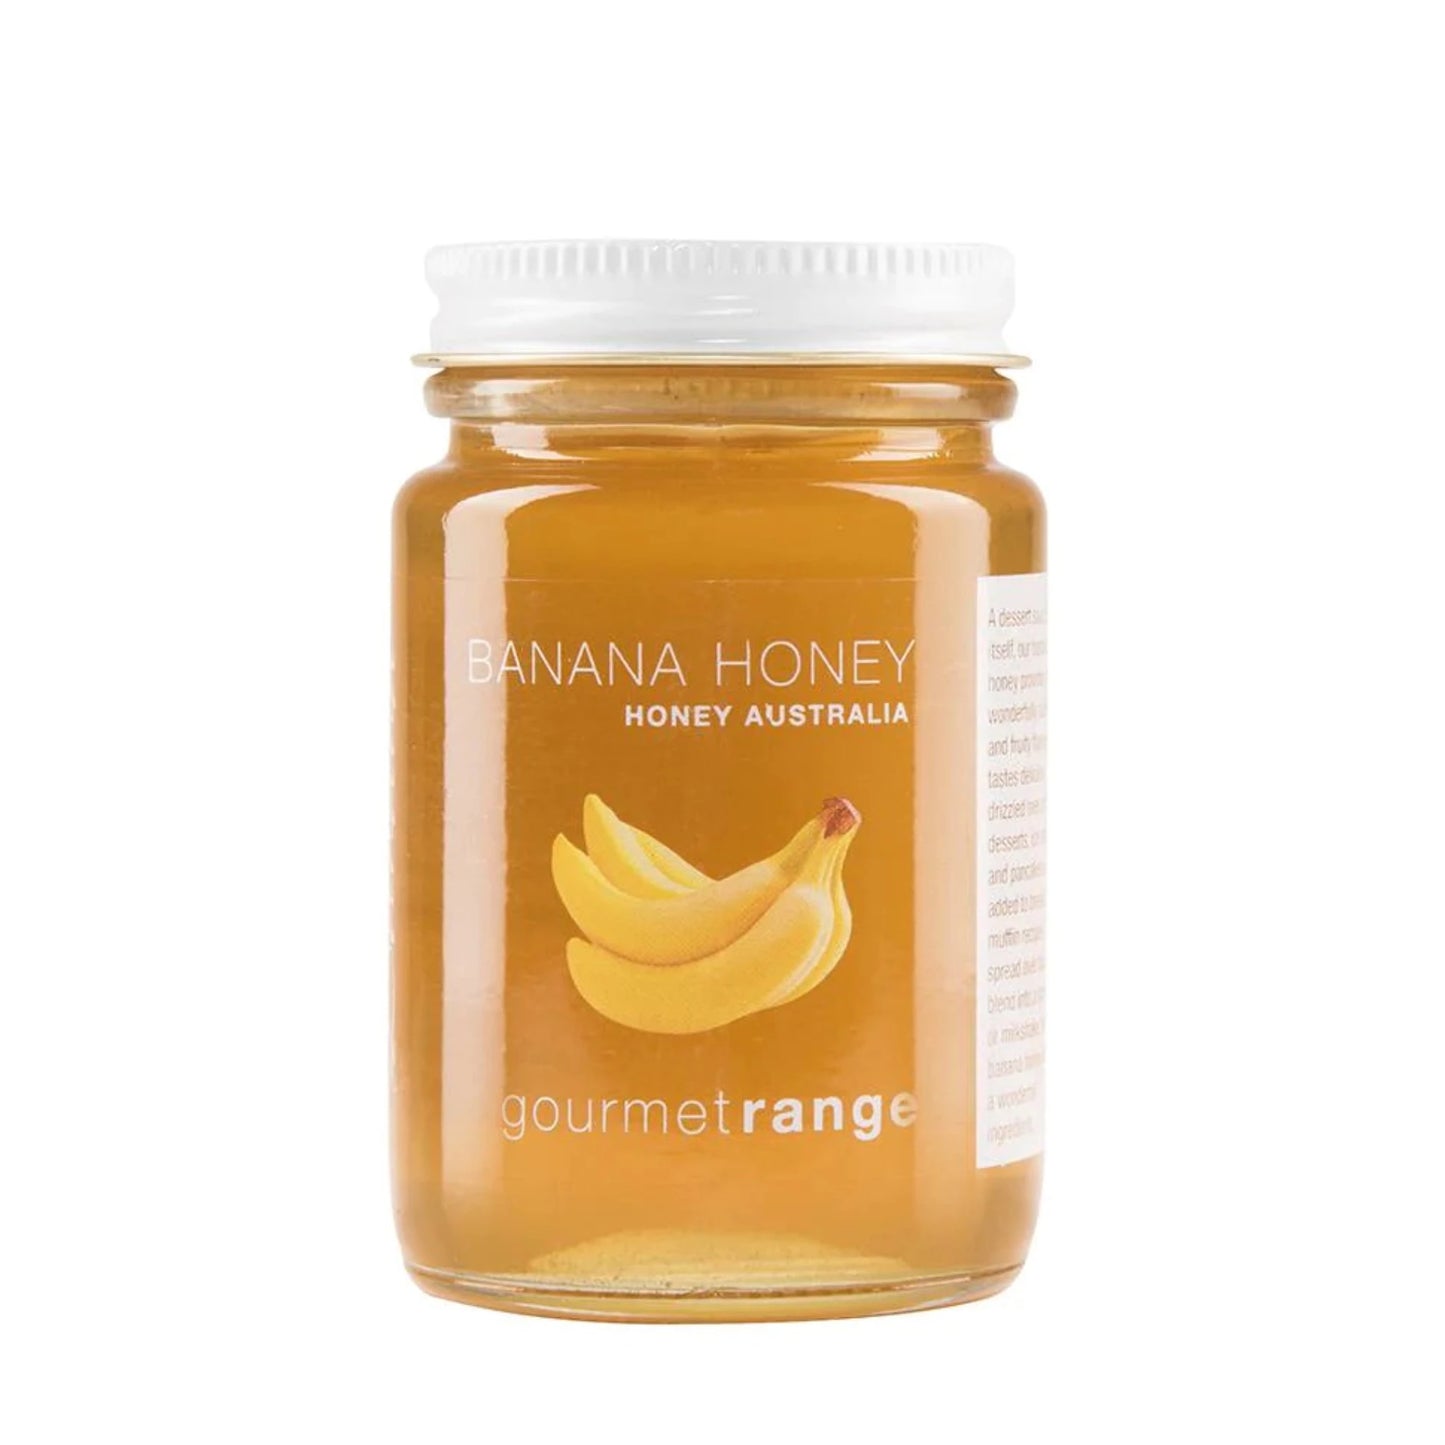 Mudgee Honey Haven - Banana Honey 170g